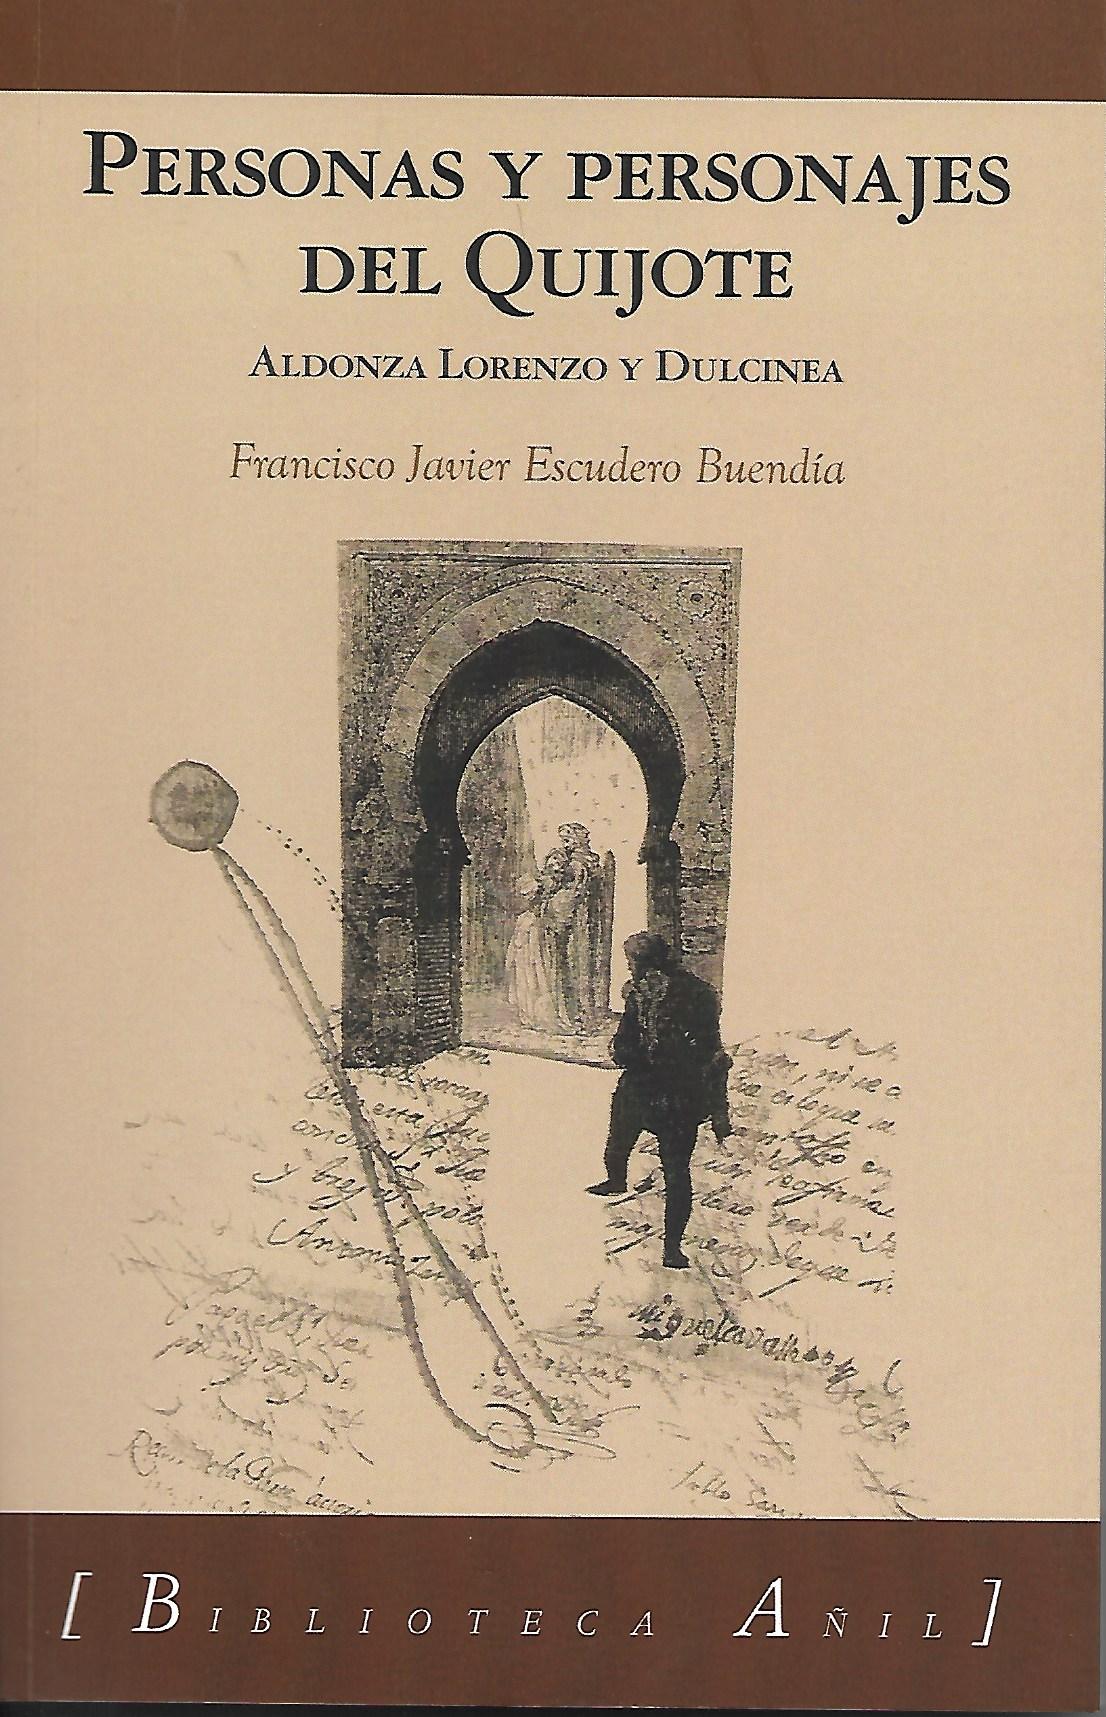 Aldonza Lorenzo y Dulcinea. Tercer libro trilogía Personas y personajes del Quijote (Edicines Almund 2021)